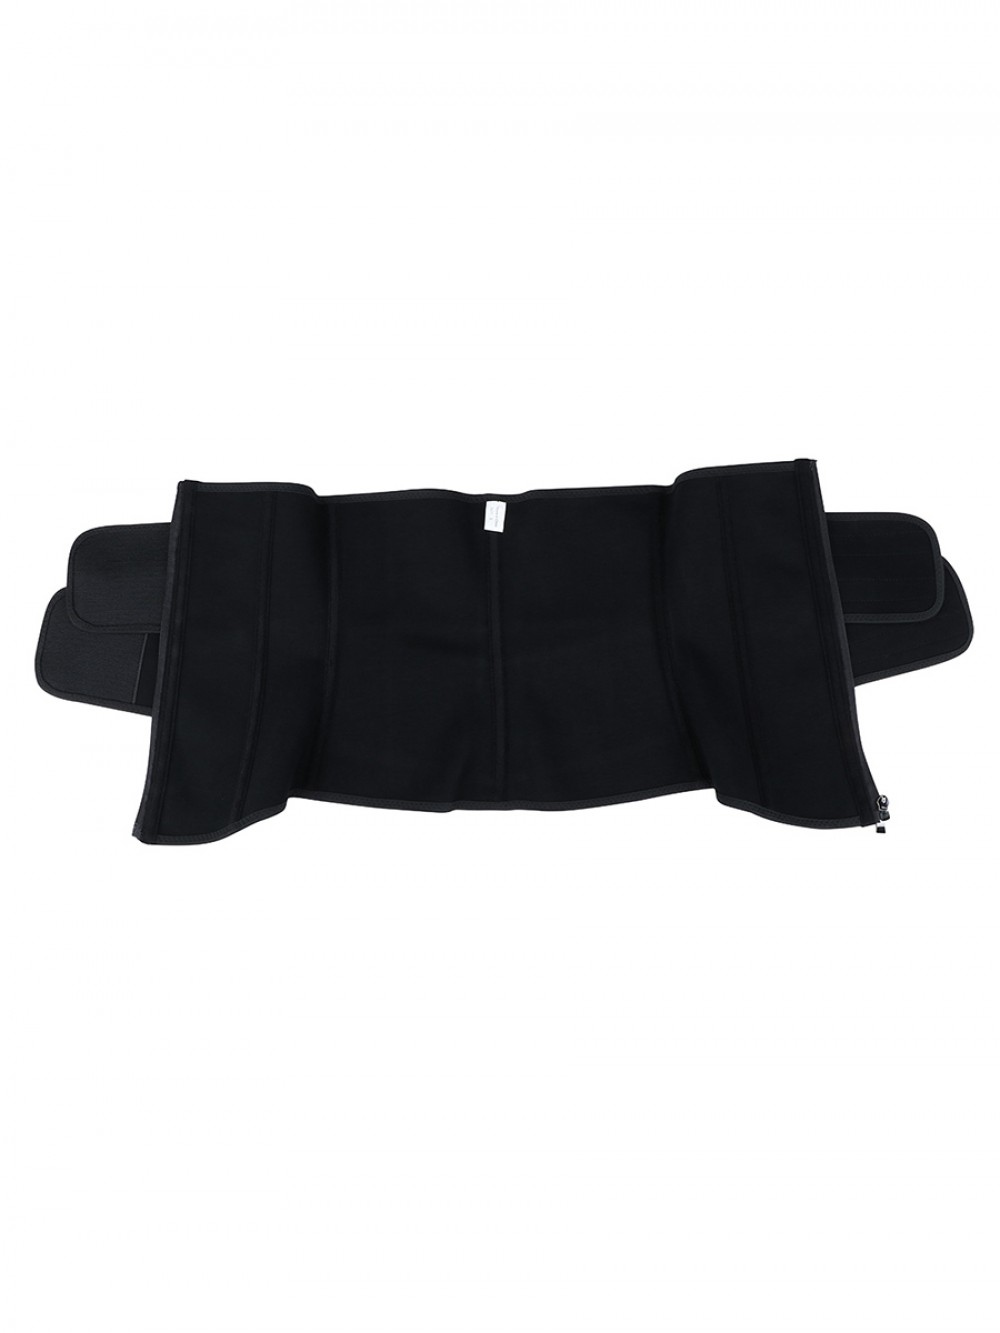 YKK Zipper Black Sticker Latex Double-Belt Waist Trainer Compression Silhouette